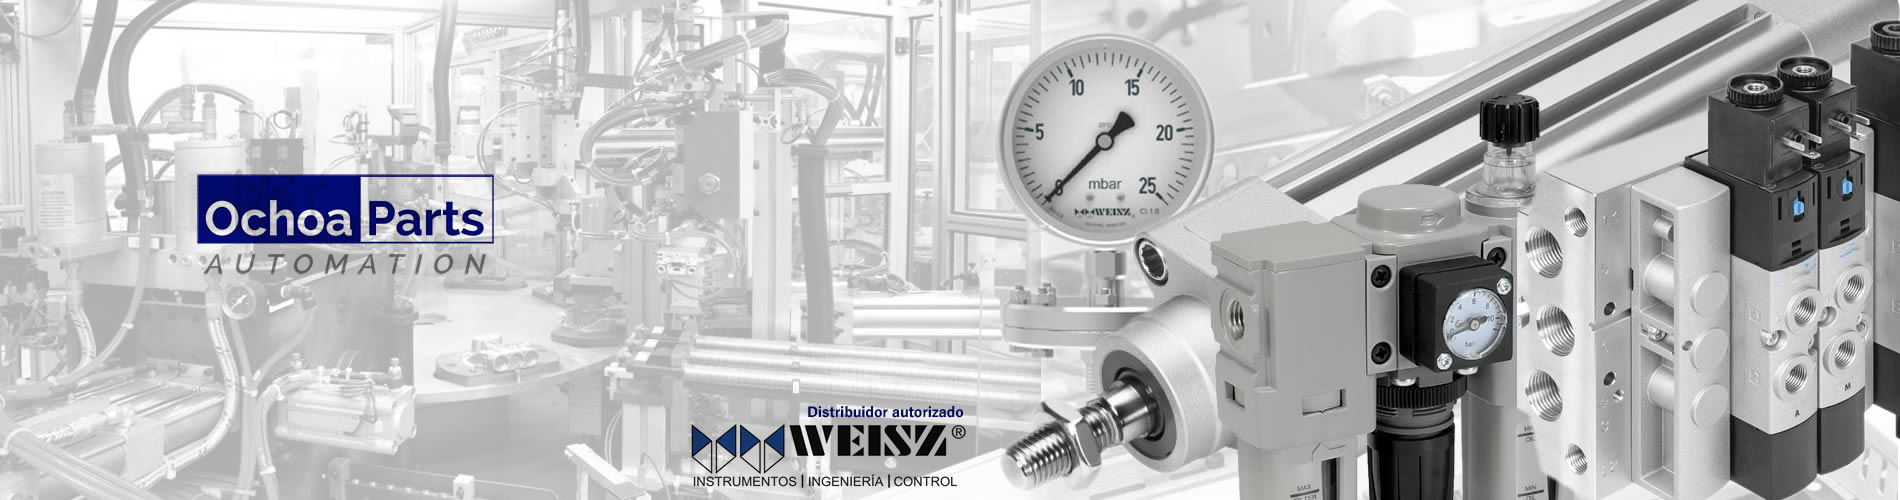 Instrumentacion neumatica, actuadores, pistones,manometros,  filtros de aire,  distribuidores marca Weisz